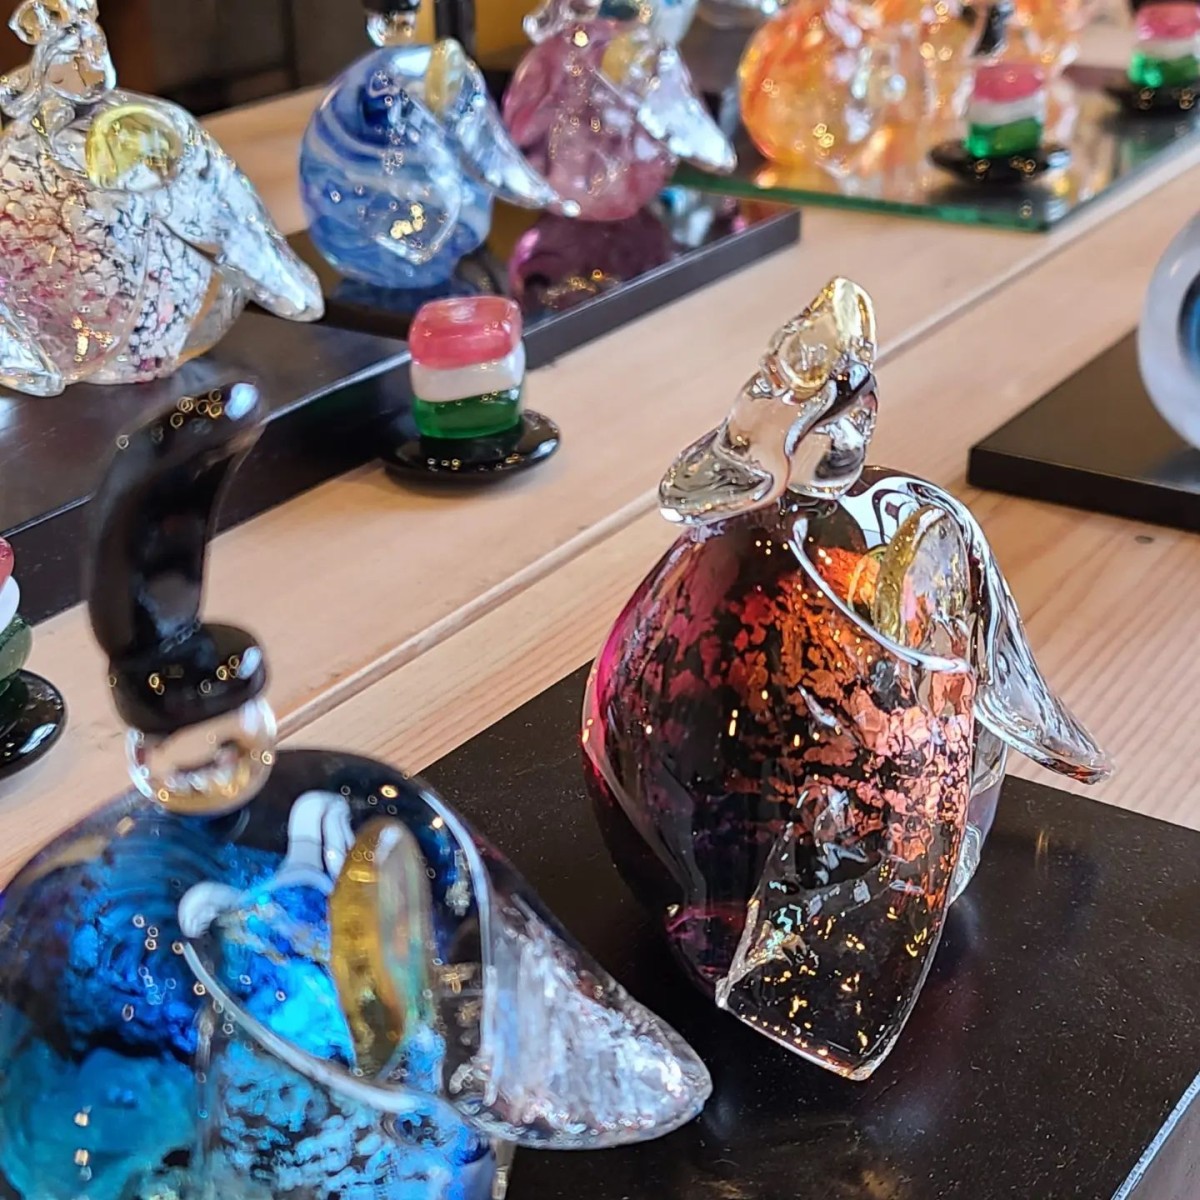 島根県出雲市にある人気ギャラリーショップ『ガラス工房Izumo』のイベントの様子